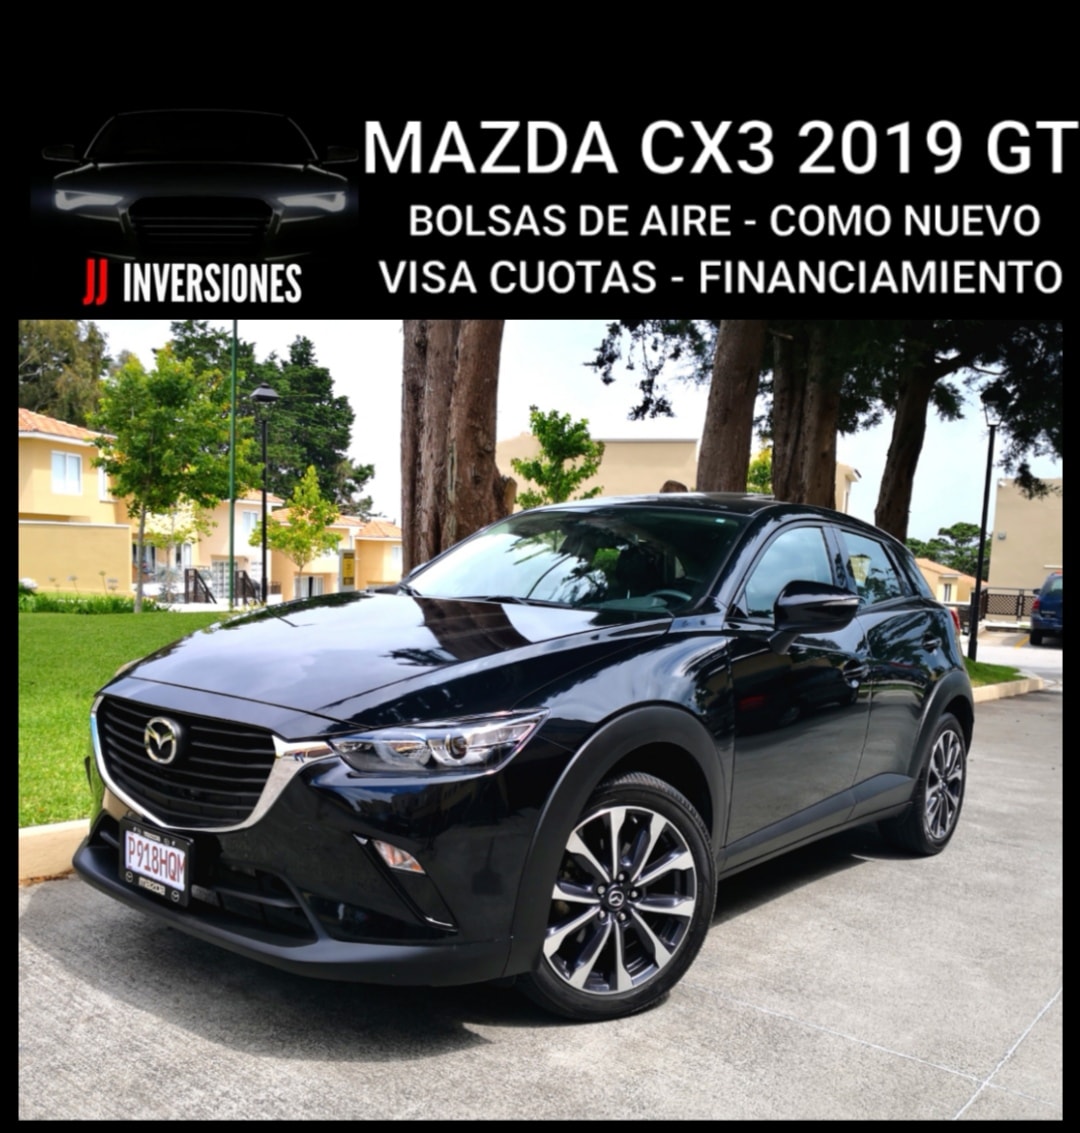 MAZDA CX3 2019 GT, BOLSAS COMPLETAS, VISA CUOTAS FINANCIAMIENTO